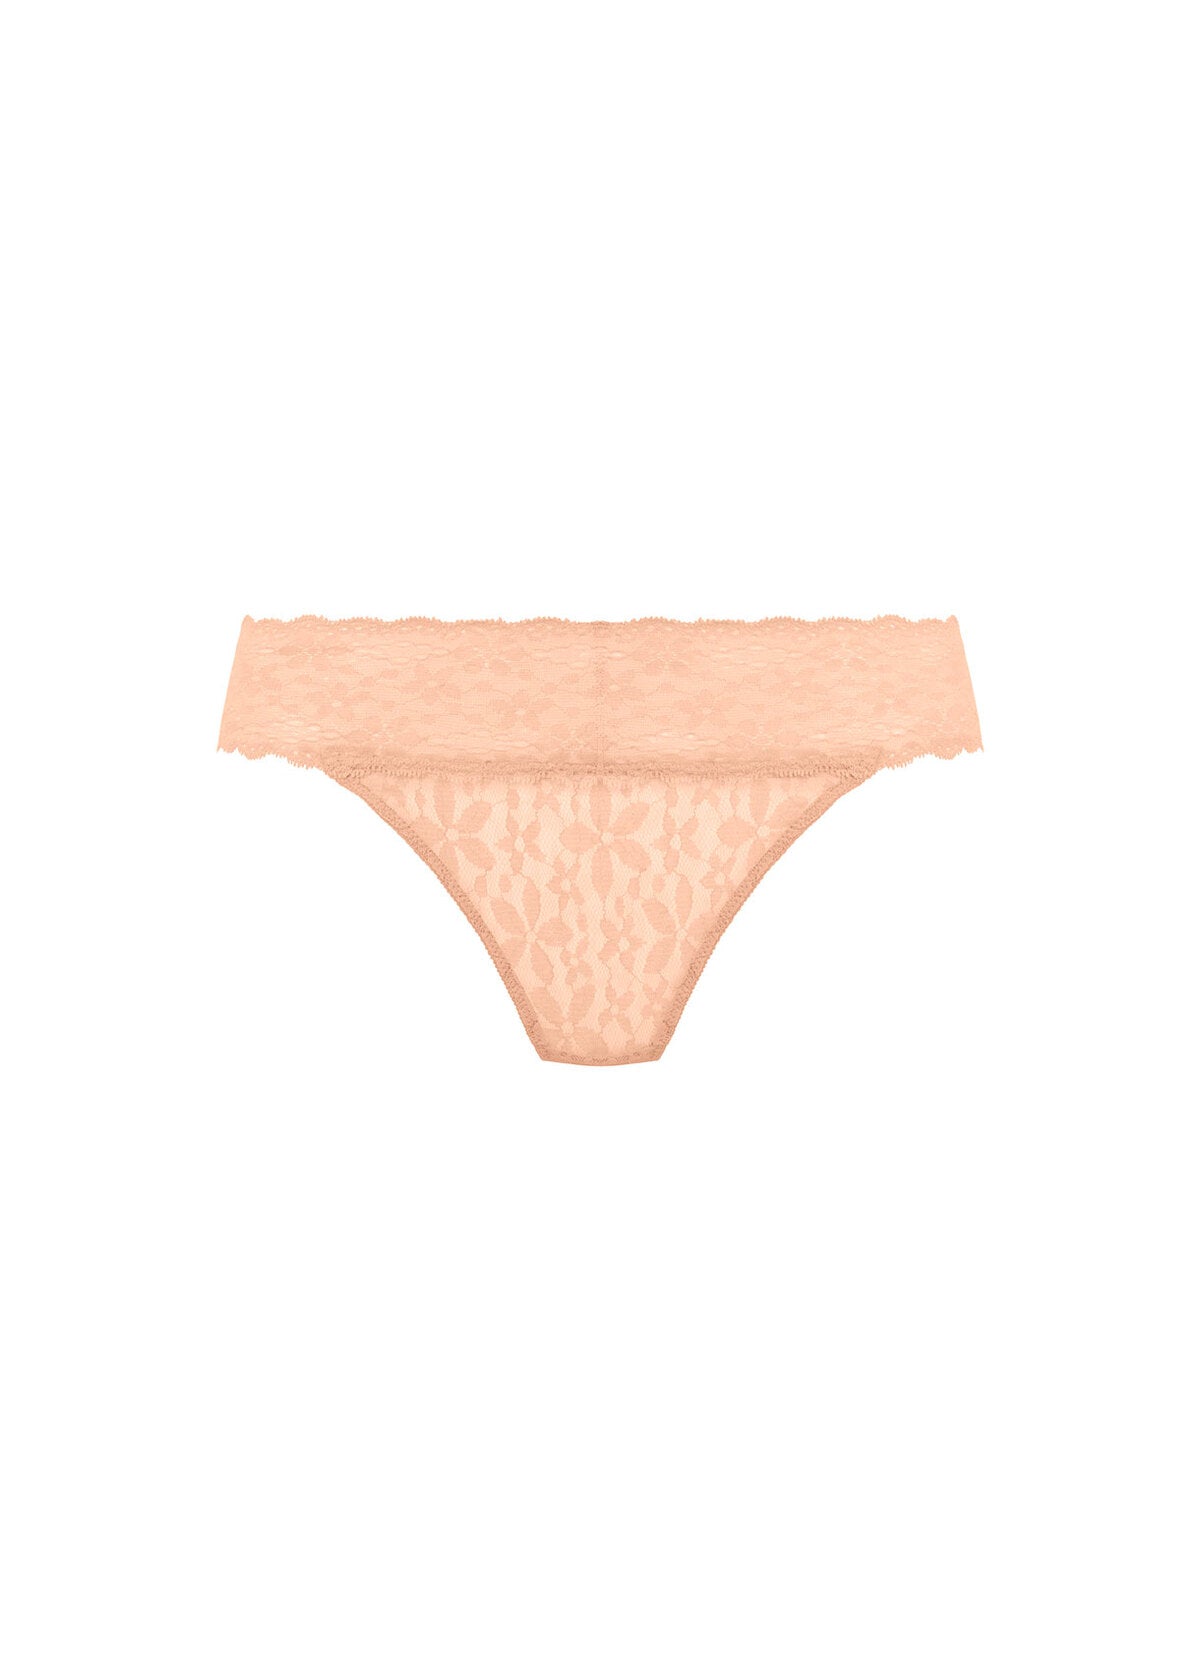 Wacoal Halo Lace Bikini Brief - Almost Apricot